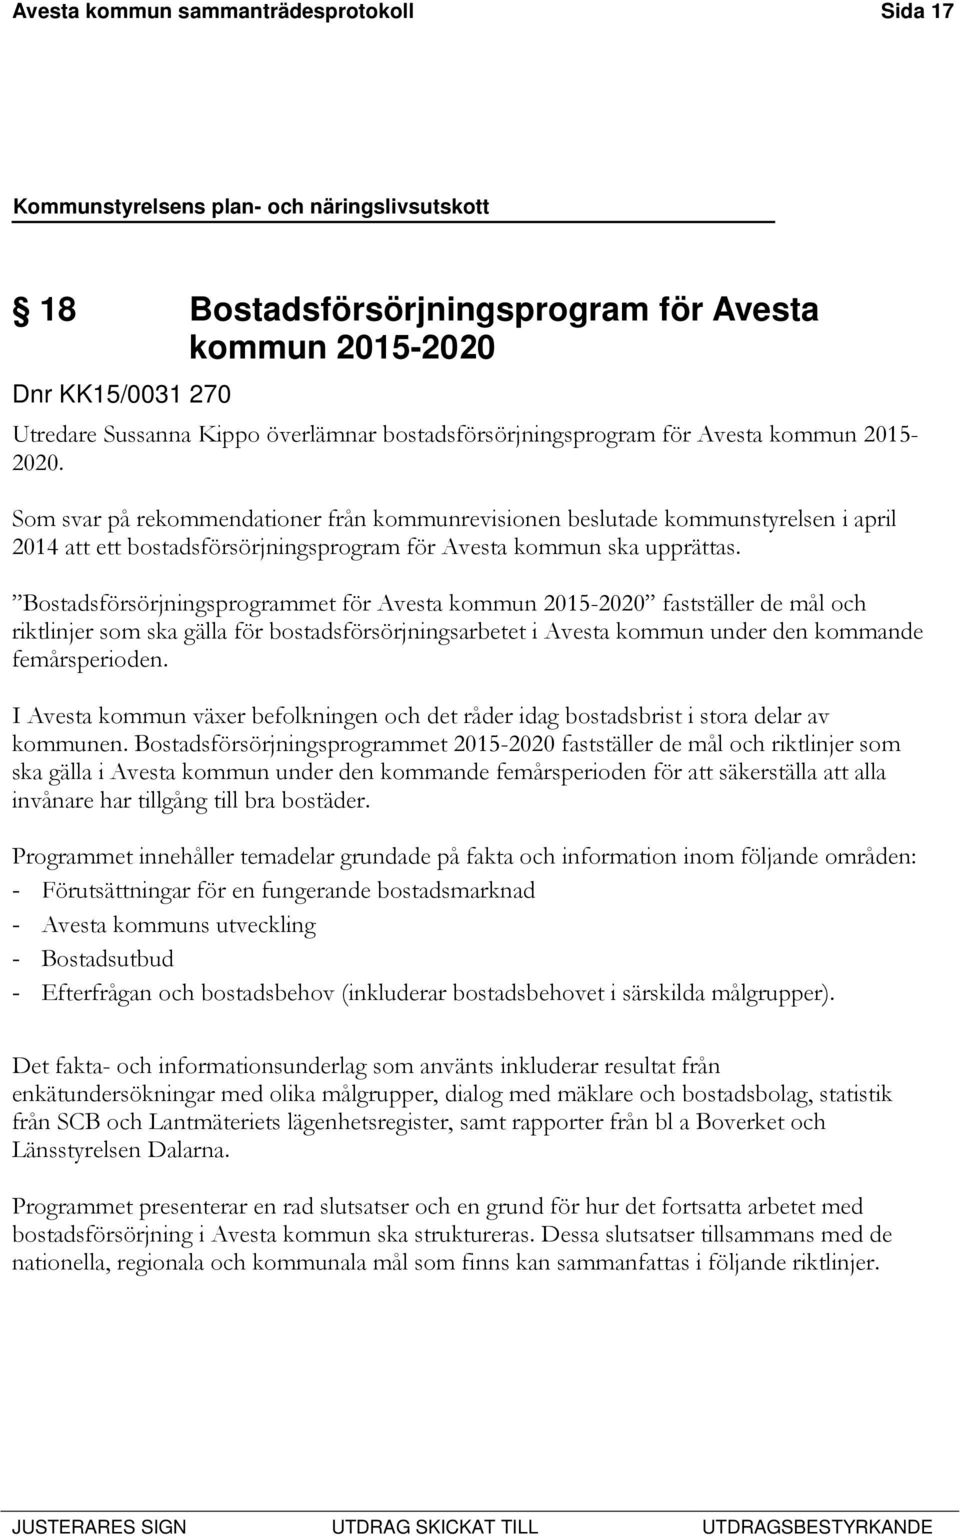 Bostadsförsörjningsprogrammet för Avesta kommun 2015-2020 fastställer de mål och riktlinjer som ska gälla för bostadsförsörjningsarbetet i Avesta kommun under den kommande femårsperioden.